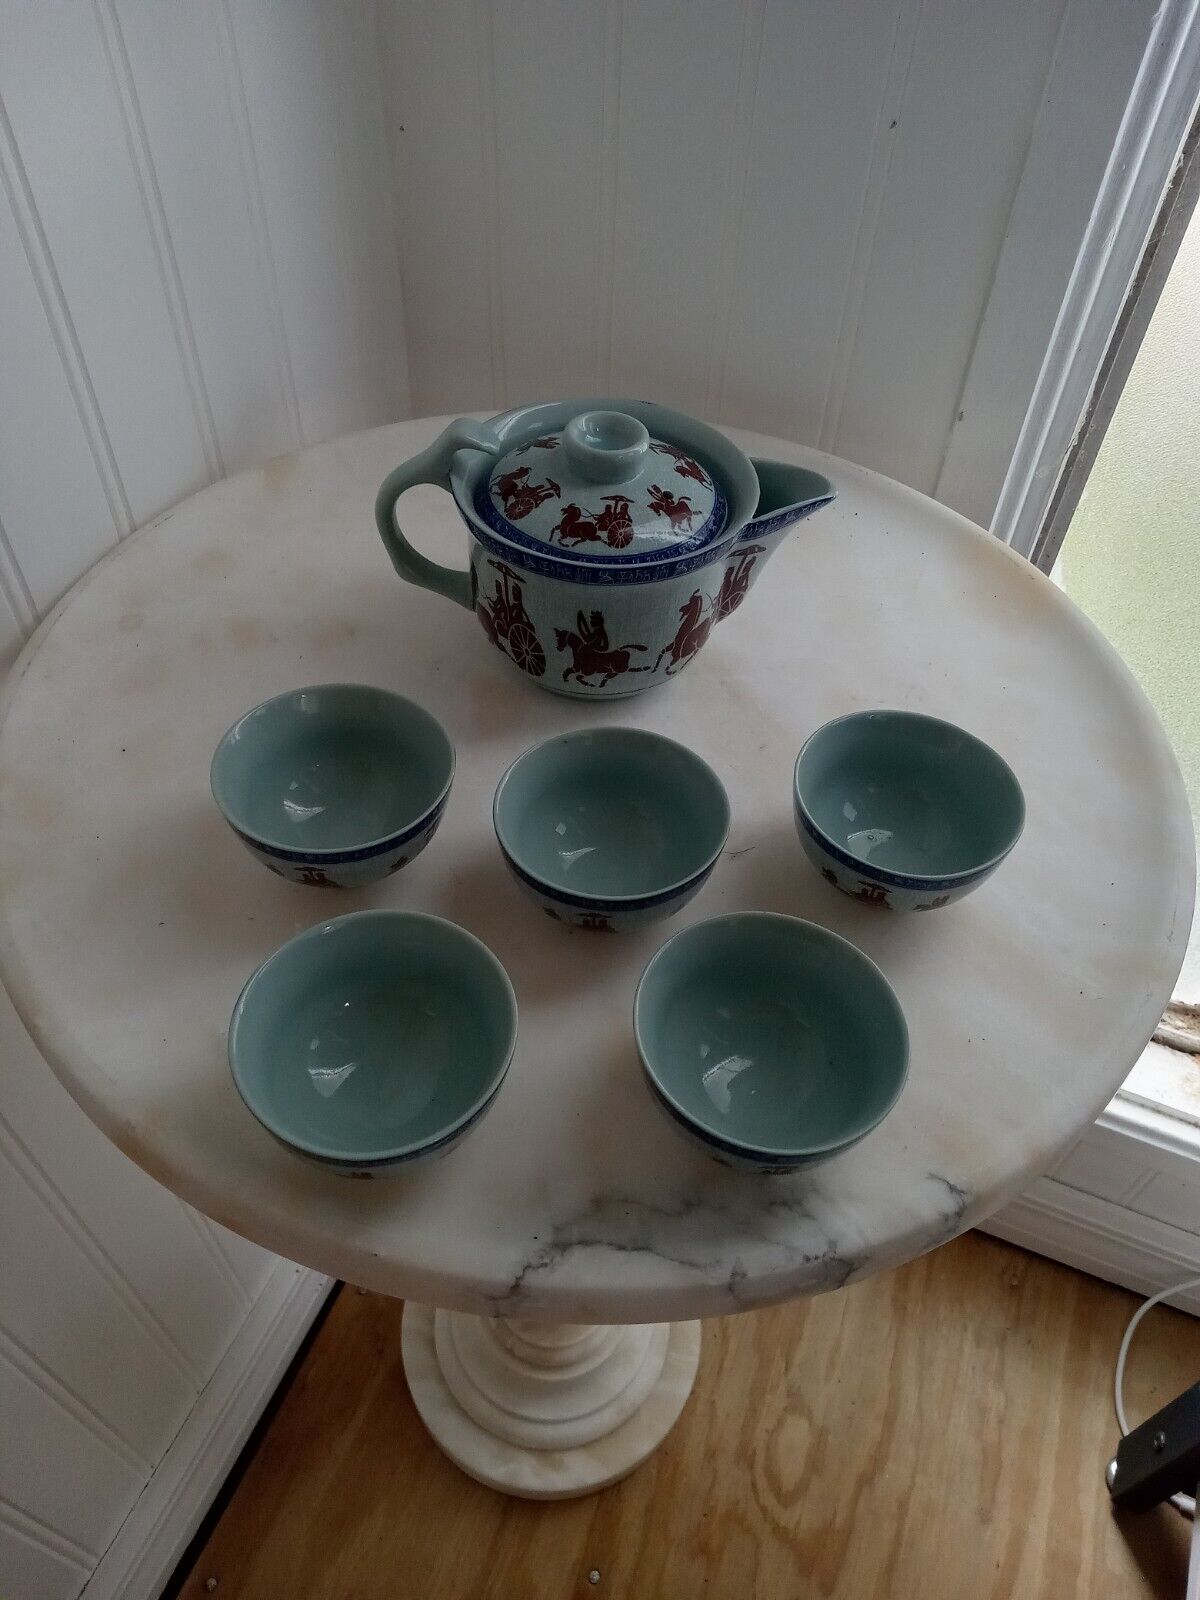 6 Piece Beautiful Japanese Tea Set 5 Cups and Tea Pot